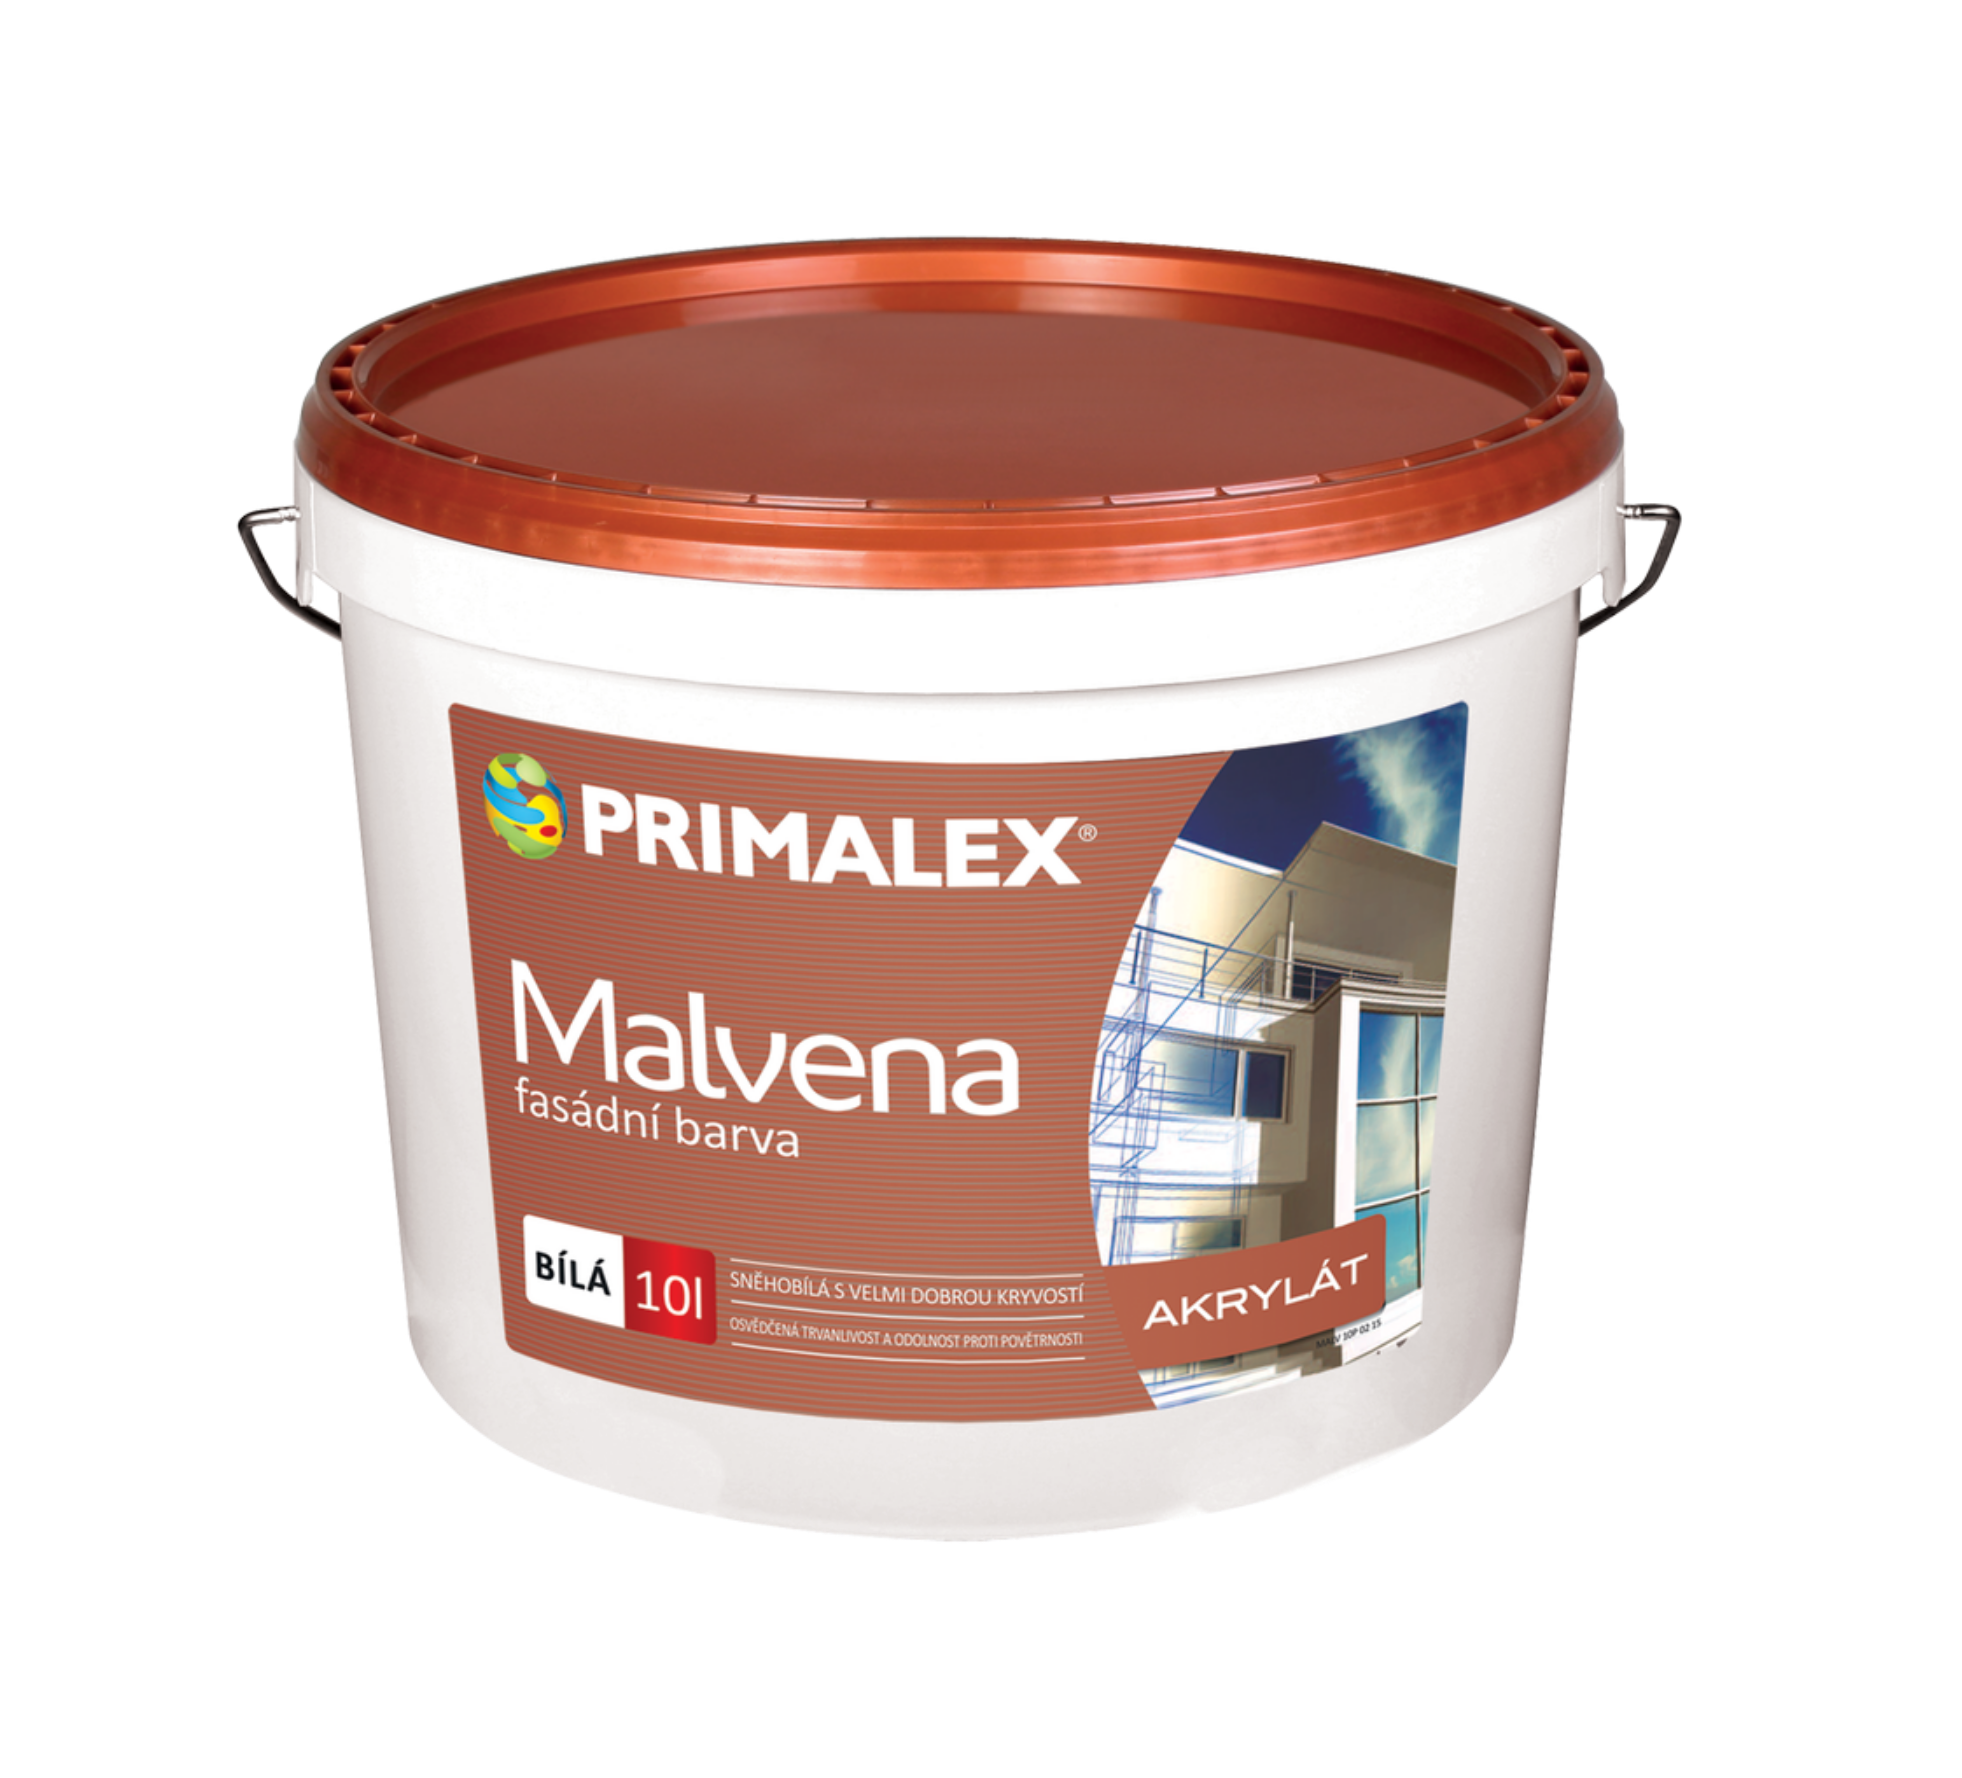 PRIMALEX Malvena fasádní barva 10 l